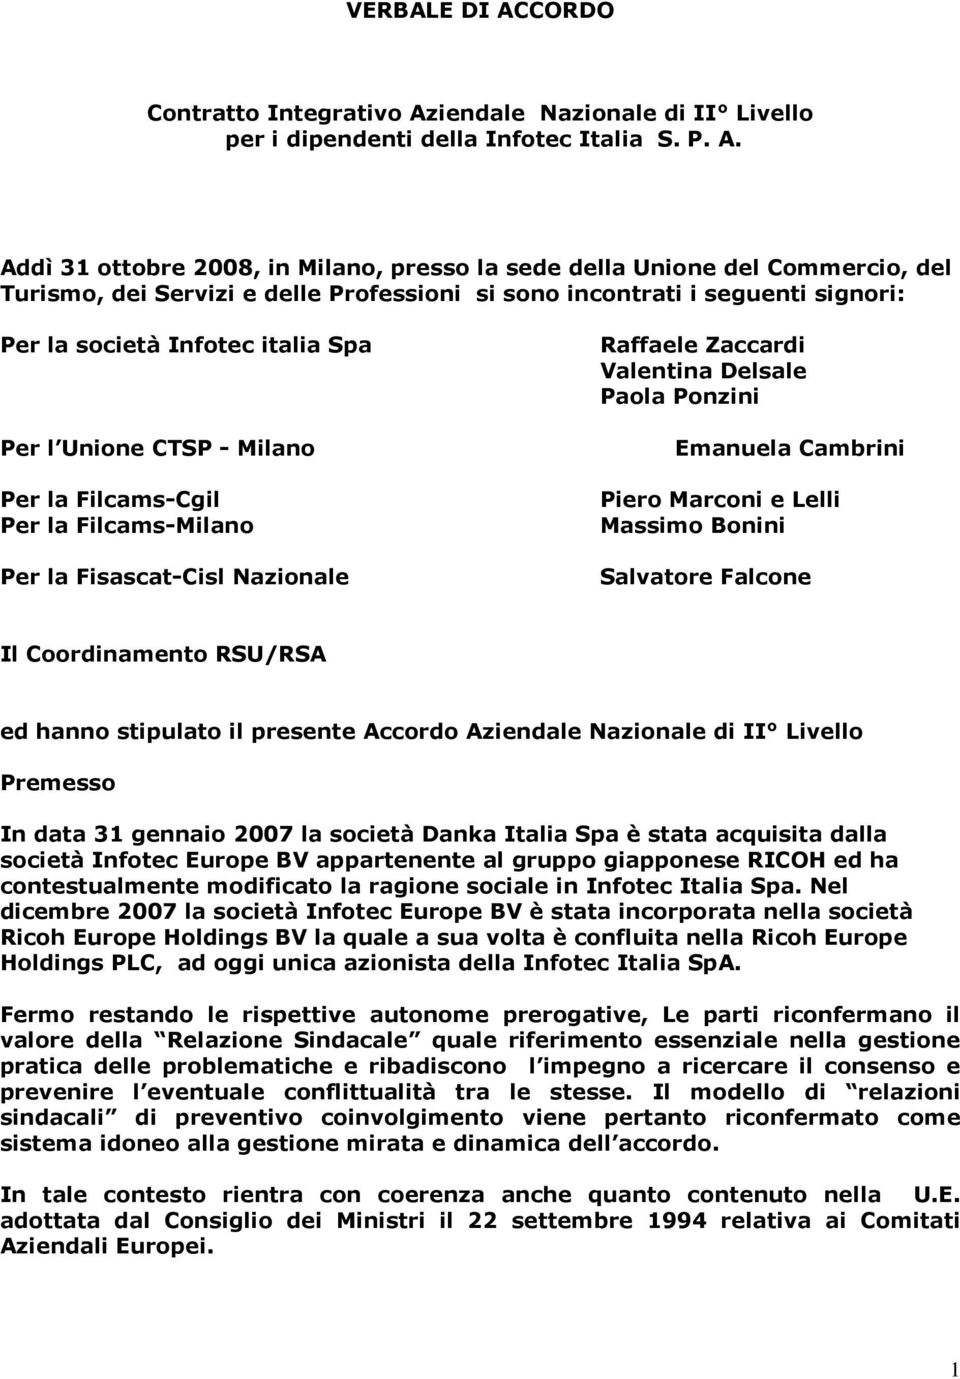 iendale Nazionale di II Livello per i dipendenti della Infotec Italia S. P. A.